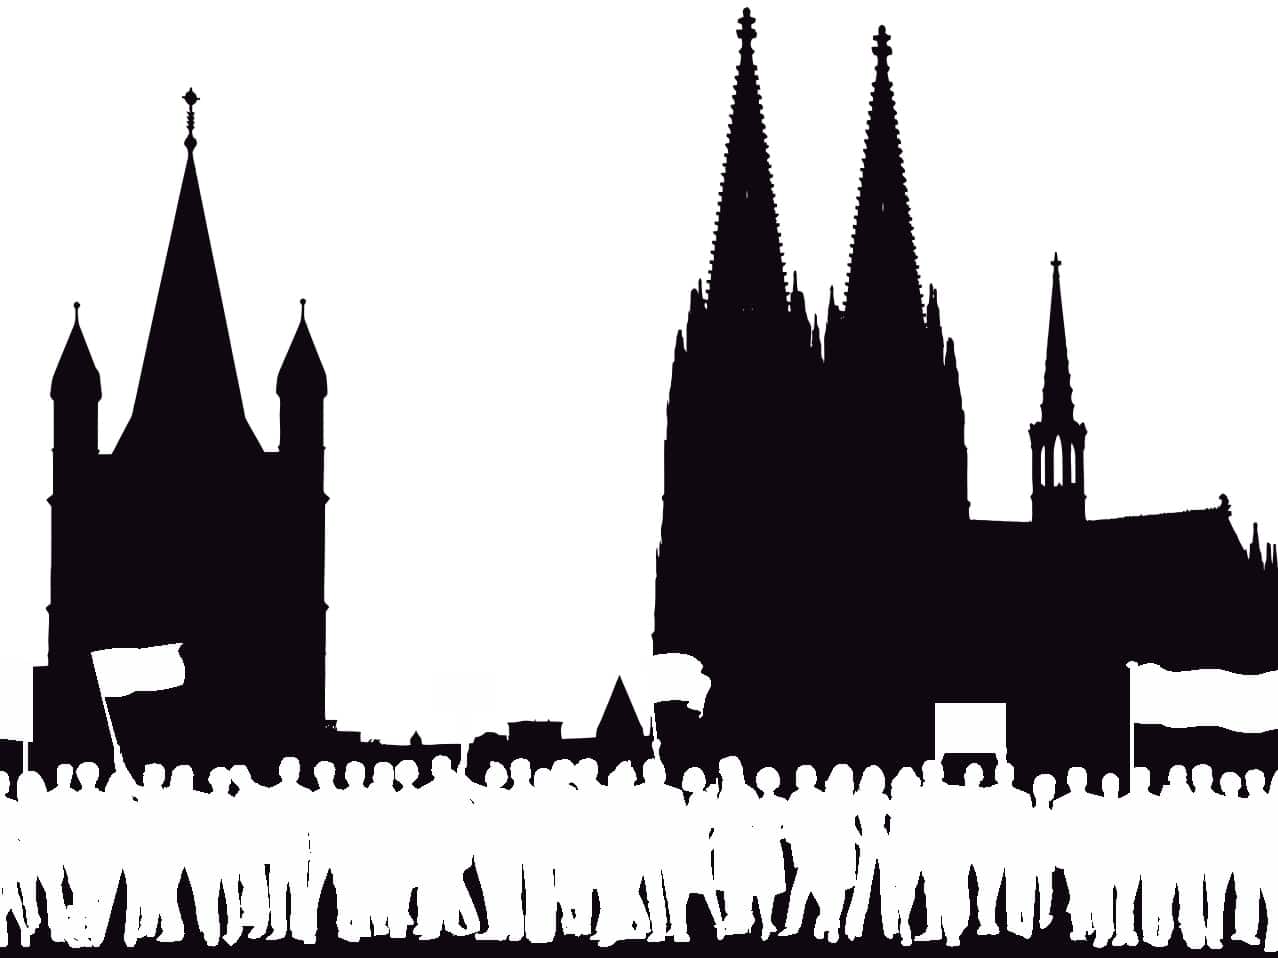 Über 50.000 Demonstranten werden zum AfD-Bundesparteitag in Köln erwartet. copyright: CityNEWS / pixabay.com